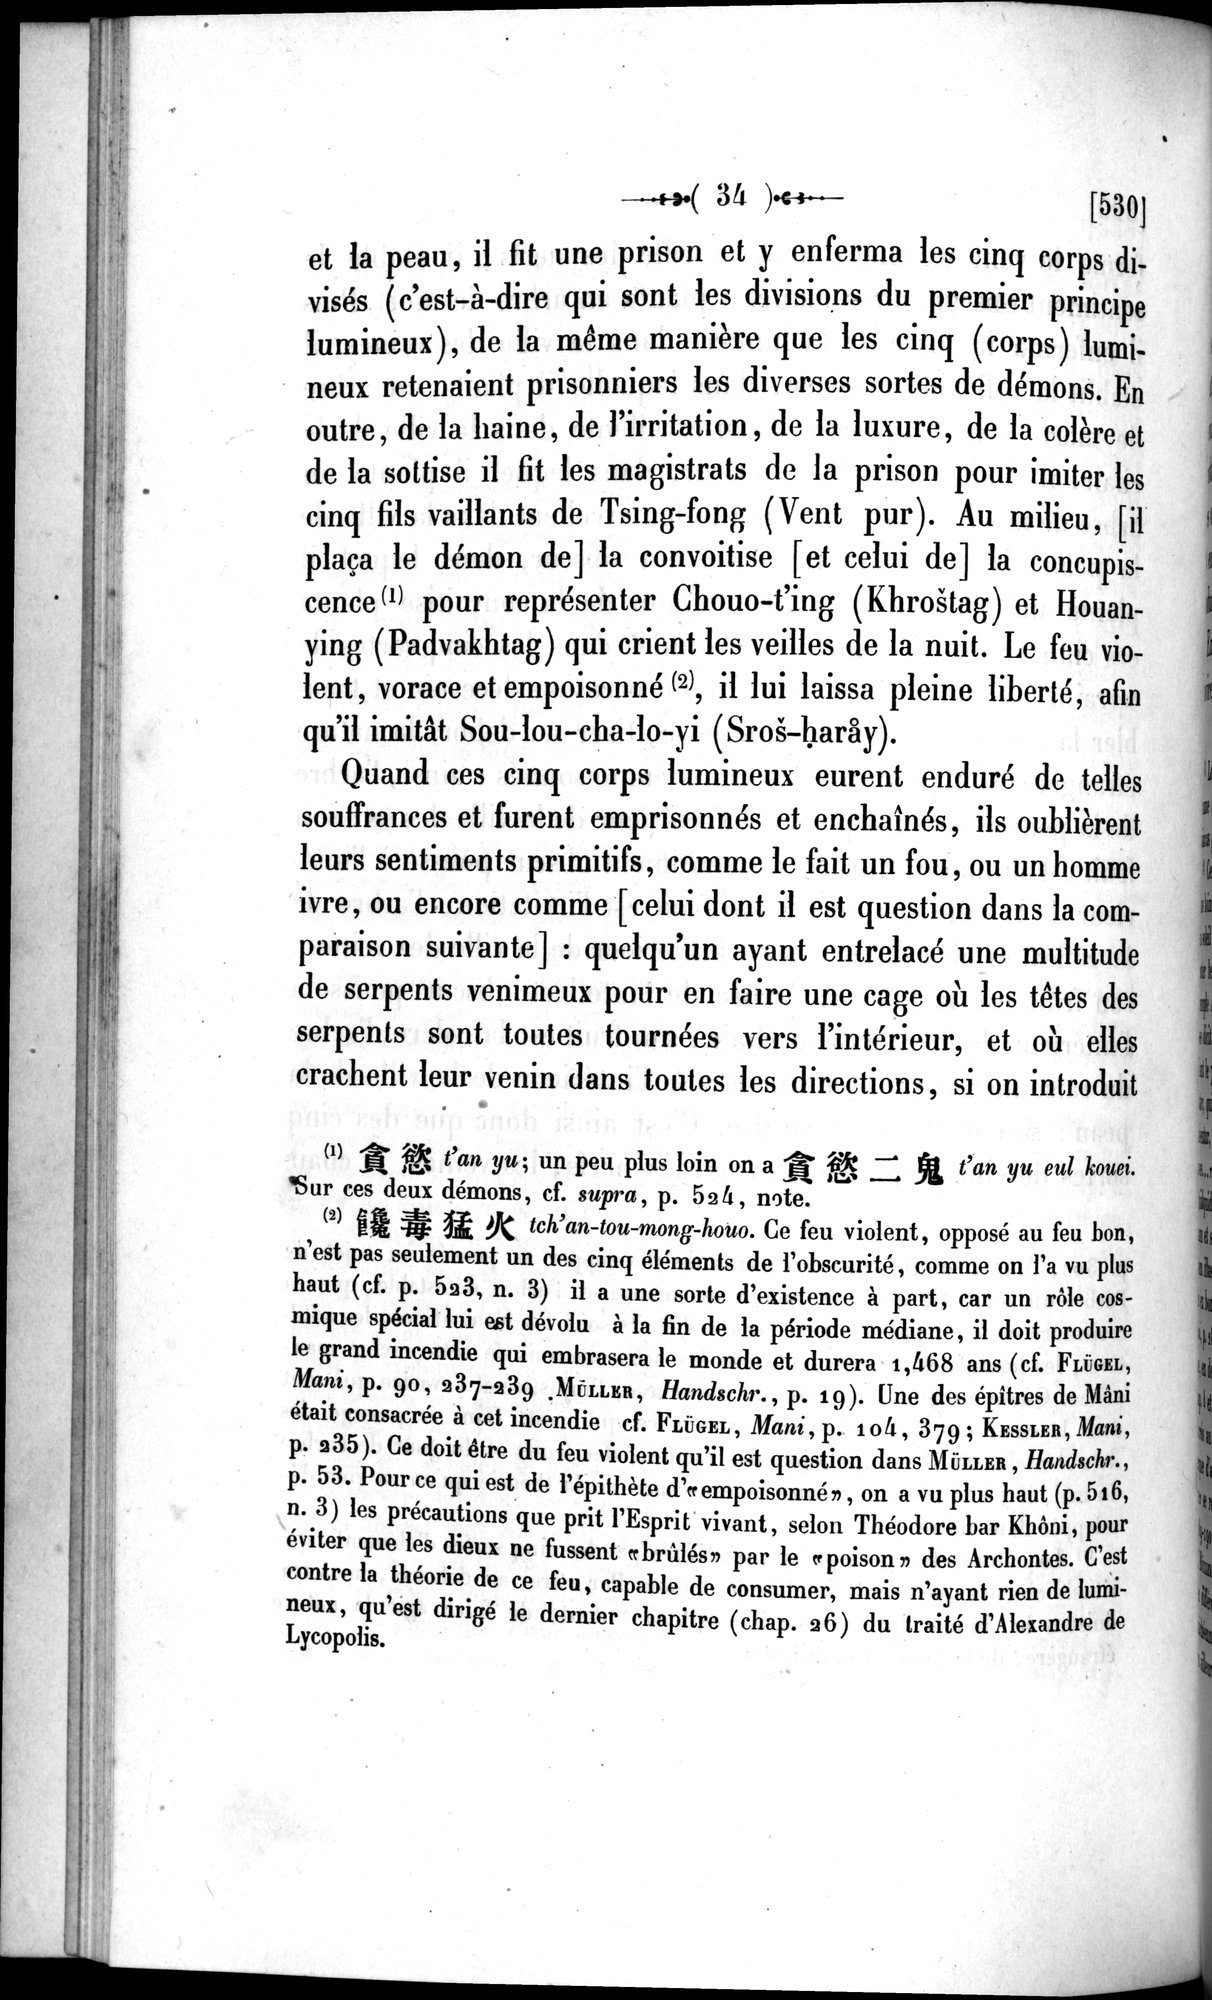 Un traité manichéen retrouvé en Chine : vol.1 / Page 44 (Grayscale High Resolution Image)